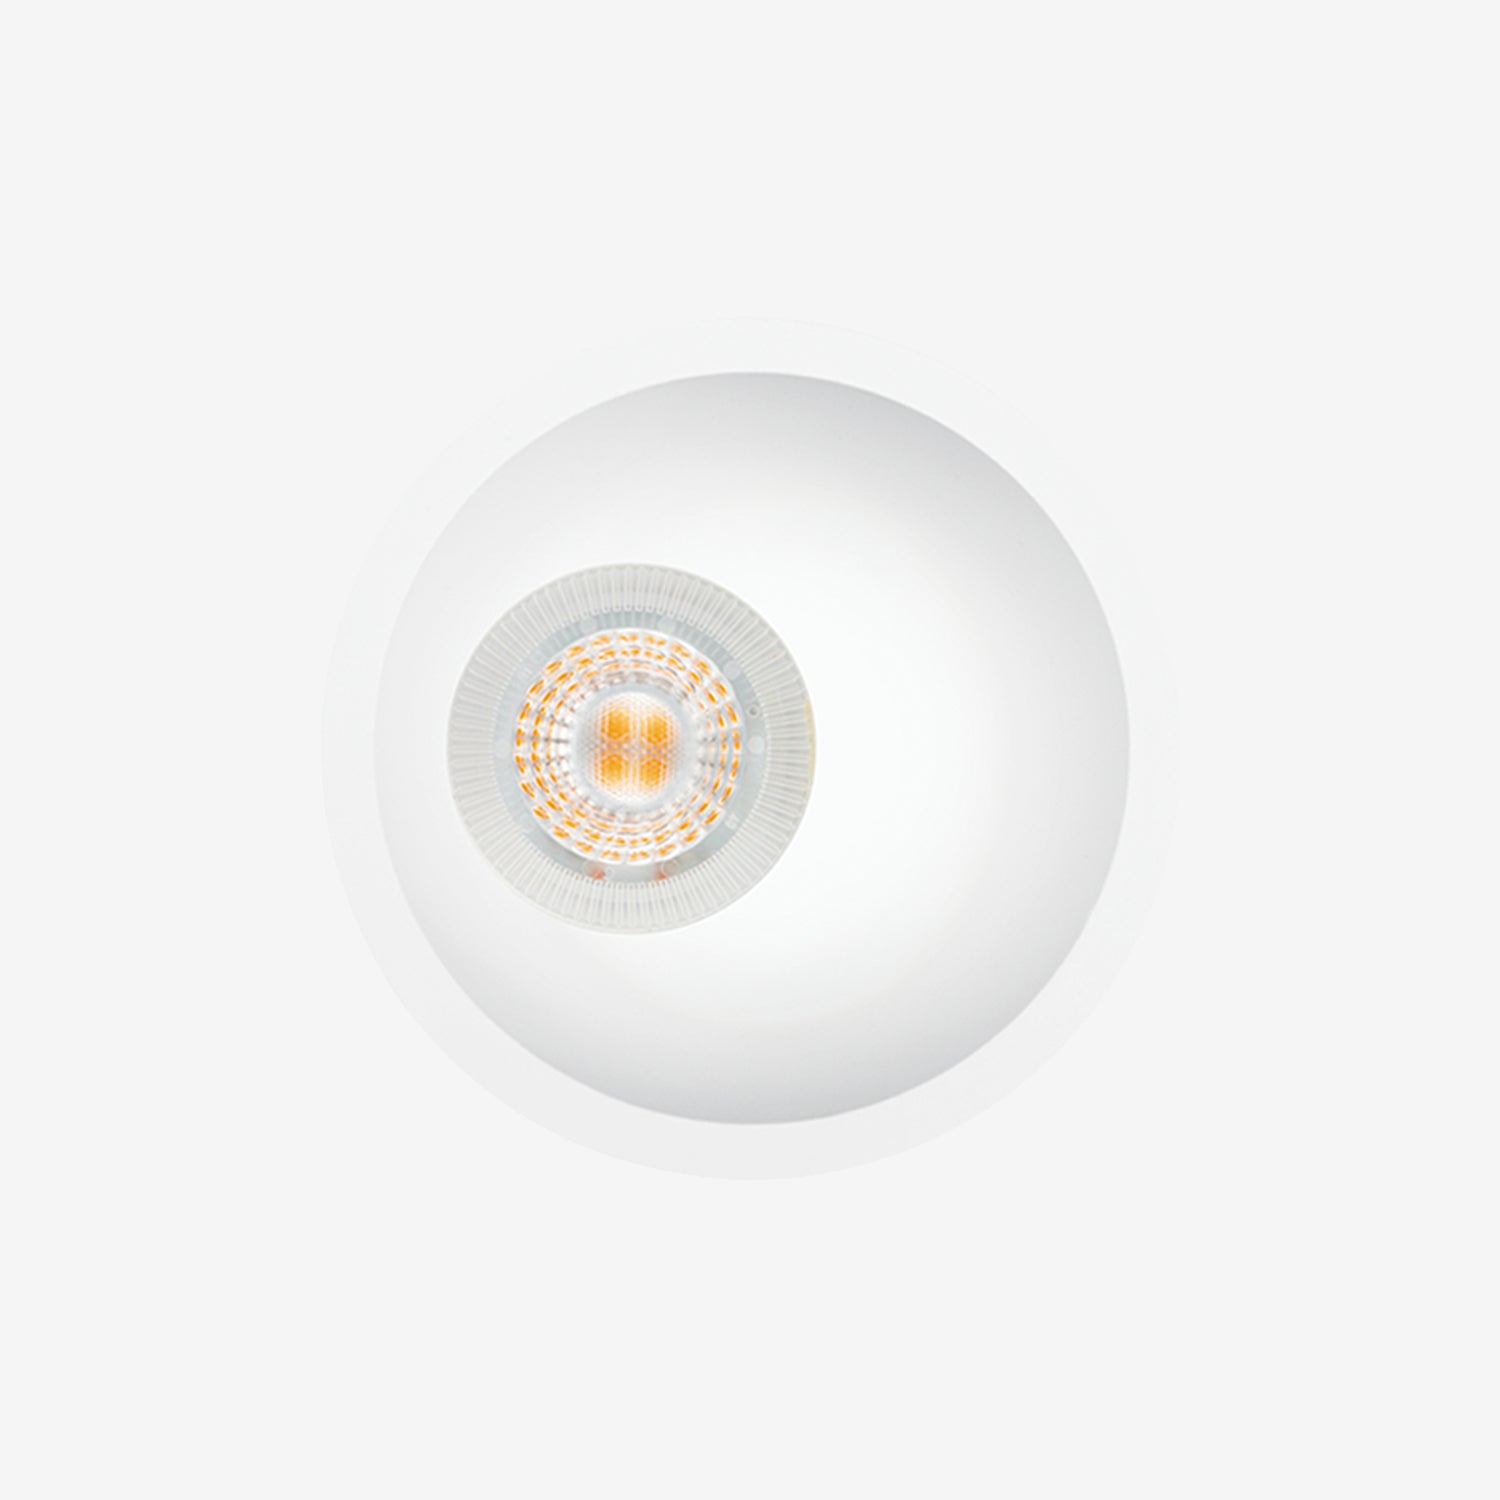 Luminario downlight antideslumbrante para empotrar en techo - Modelo: TL-2904